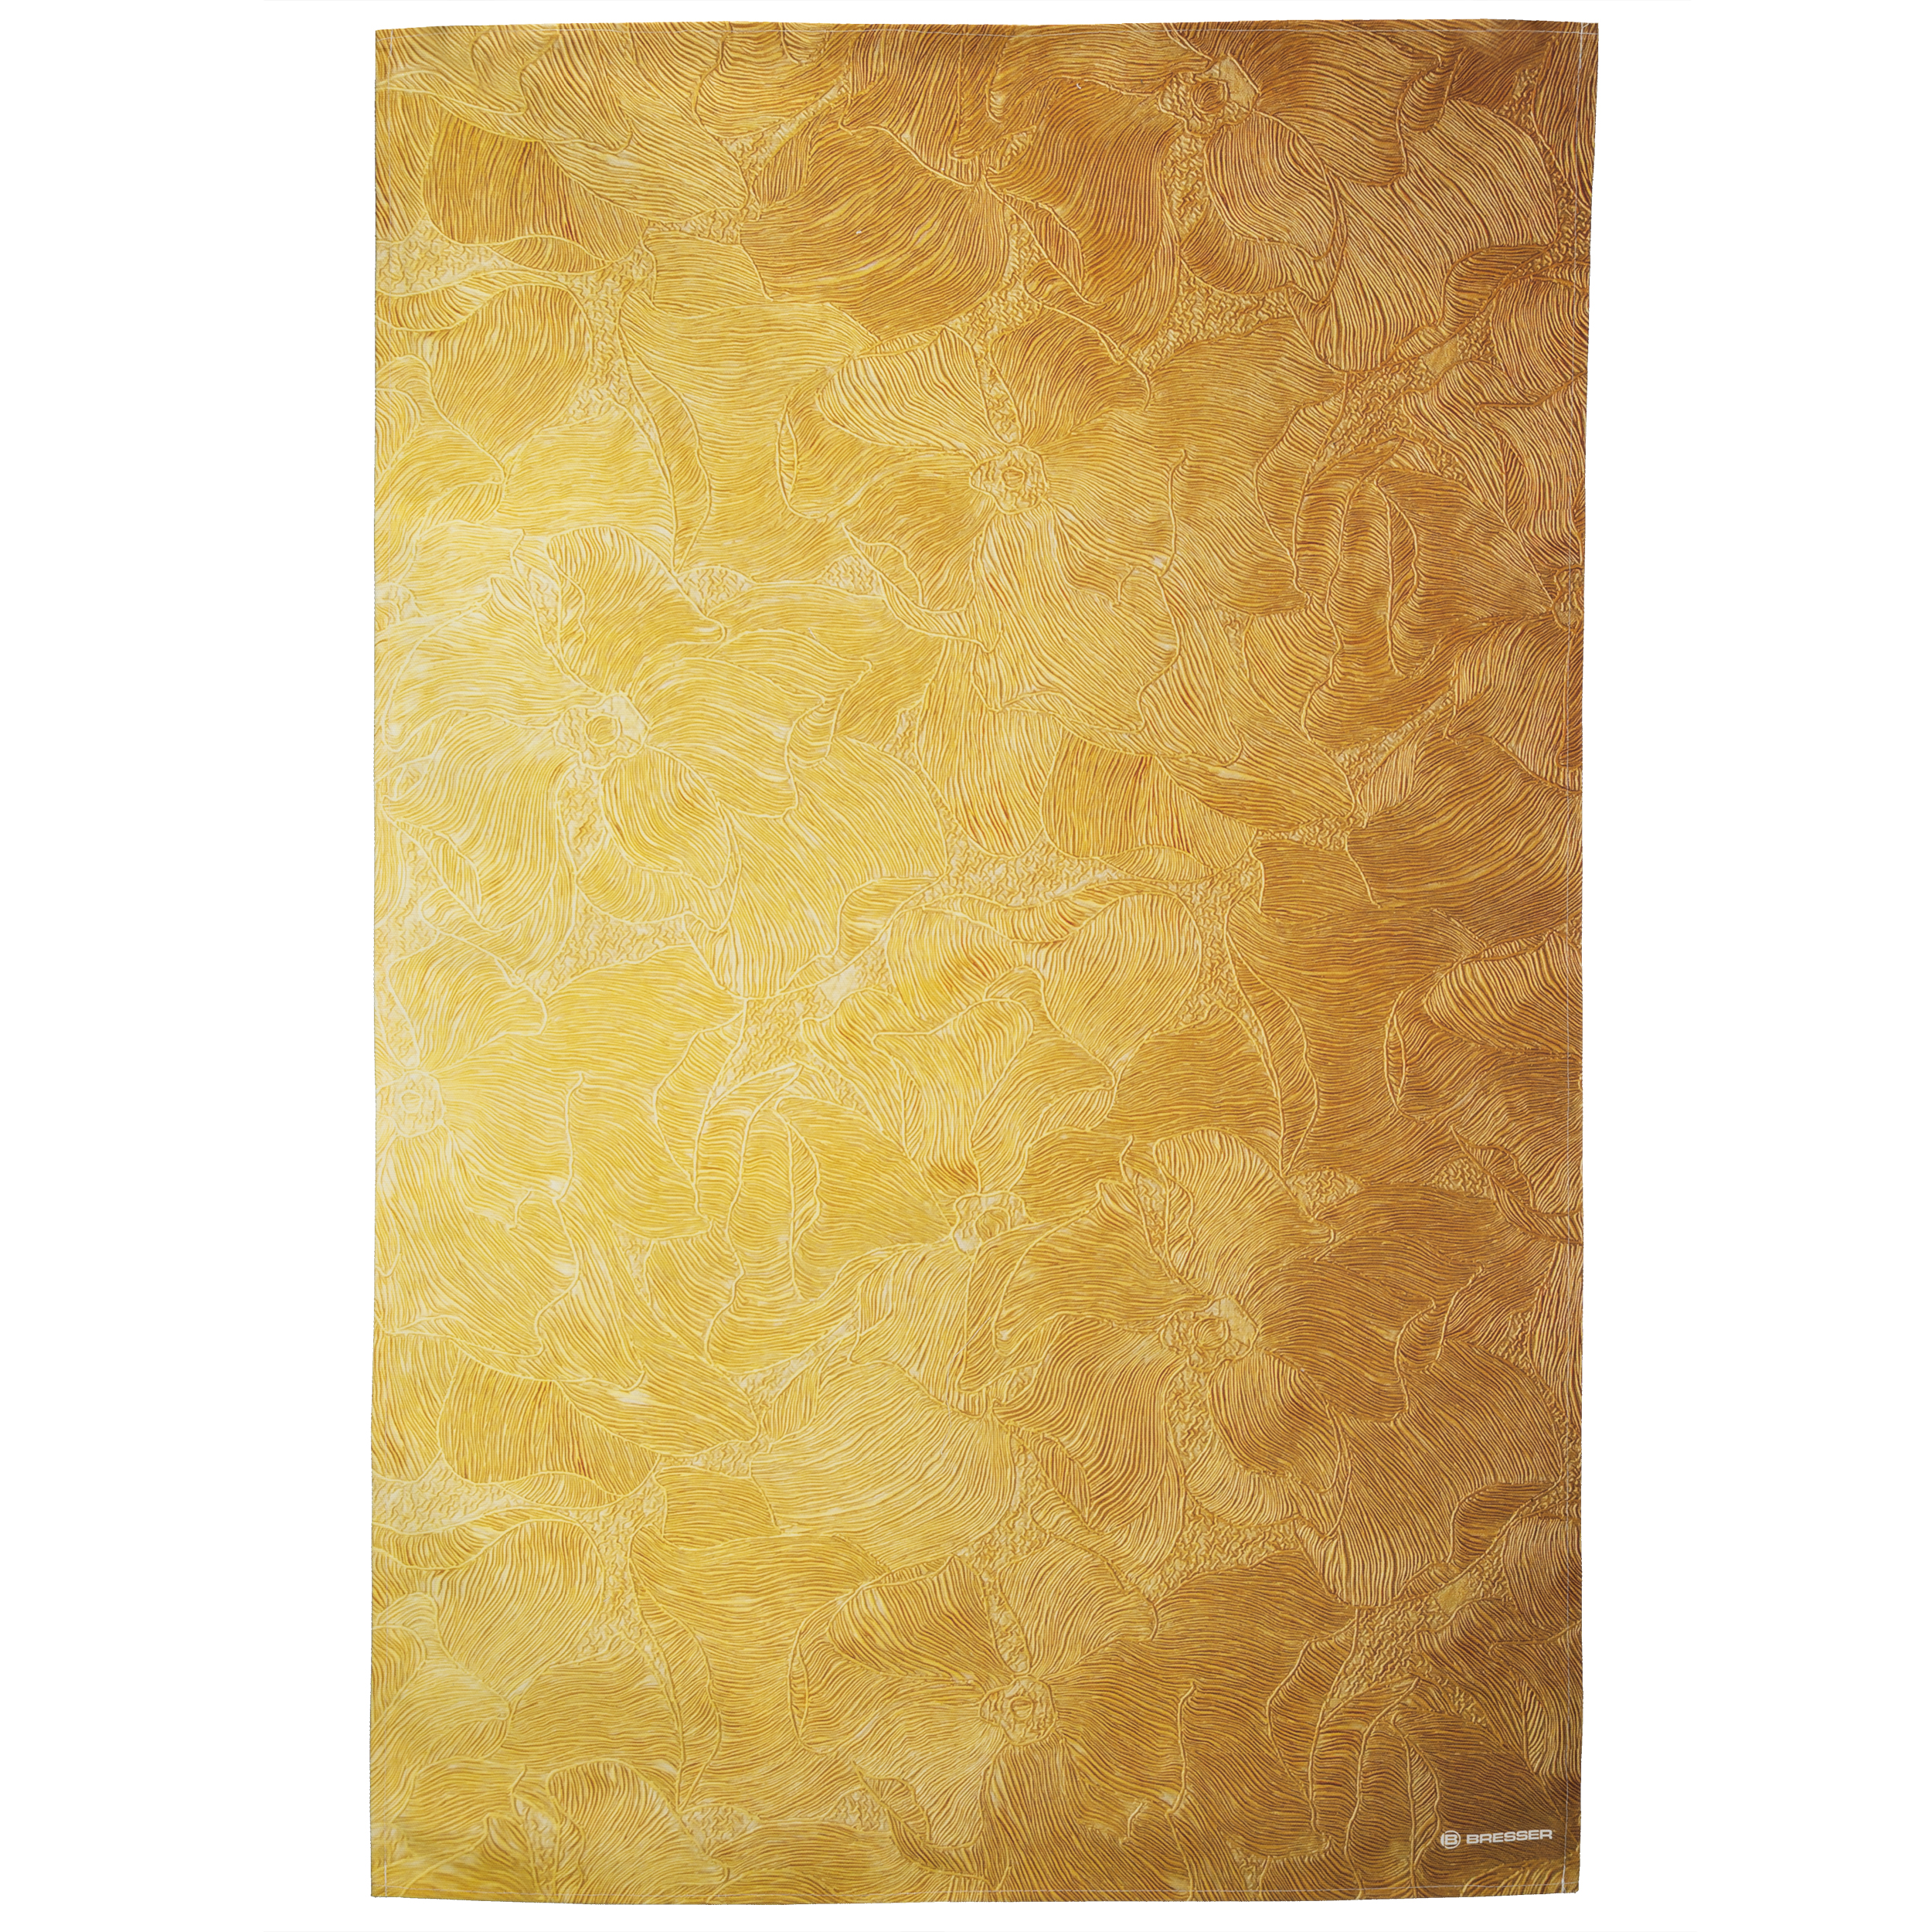 BRESSER Tissu de fond avec motif photo 80 x 120 cm - Golden Flower